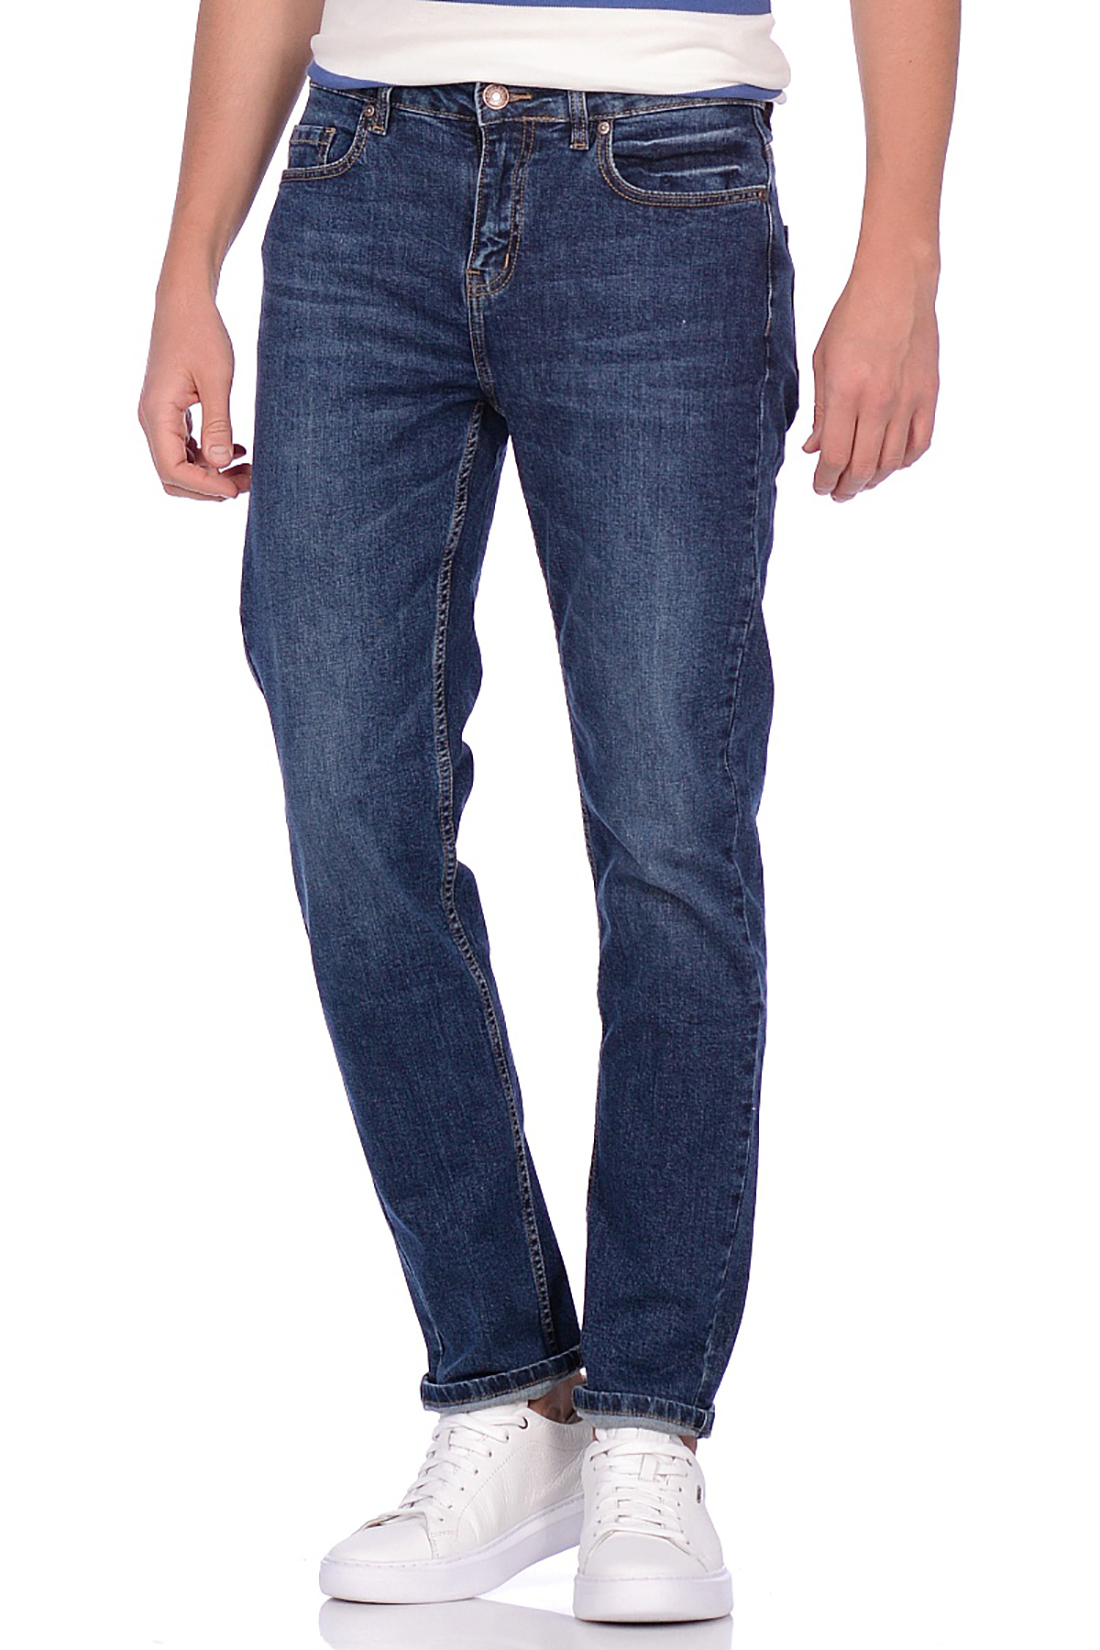 Повседневные синие джинсы (арт. baon B809505), размер 38, цвет blue denim#голубой